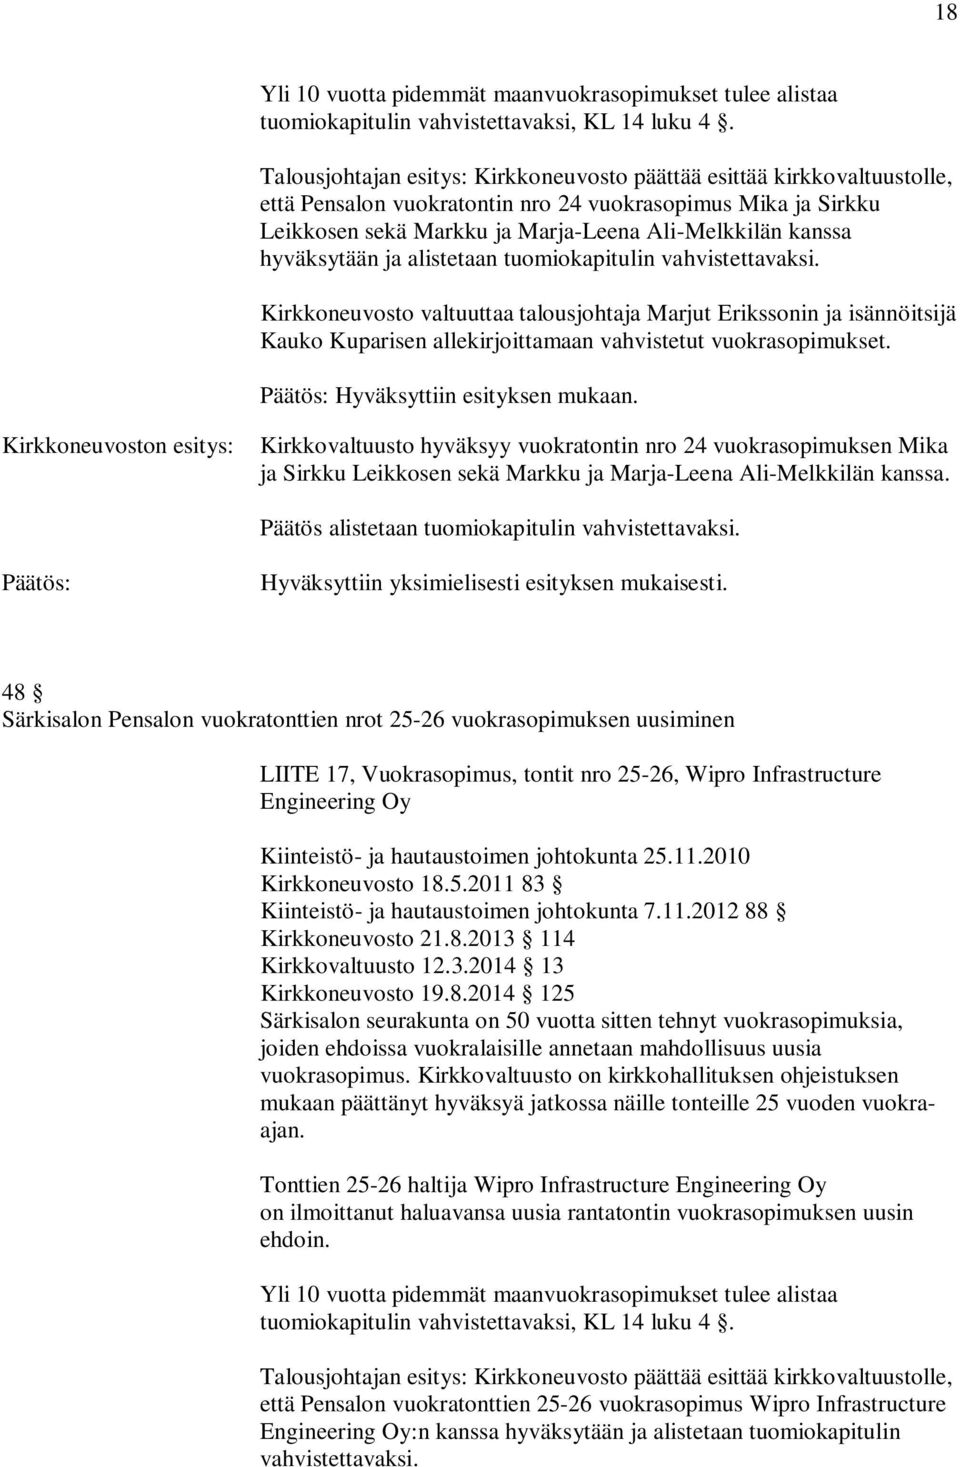 Kirkkoneuvoston esitys: Kirkkovaltuusto hyväksyy vuokratontin nro 24 vuokrasopimuksen Mika ja Sirkku Leikkosen sekä Markku ja Marja-Leena Ali-Melkkilän kanssa.